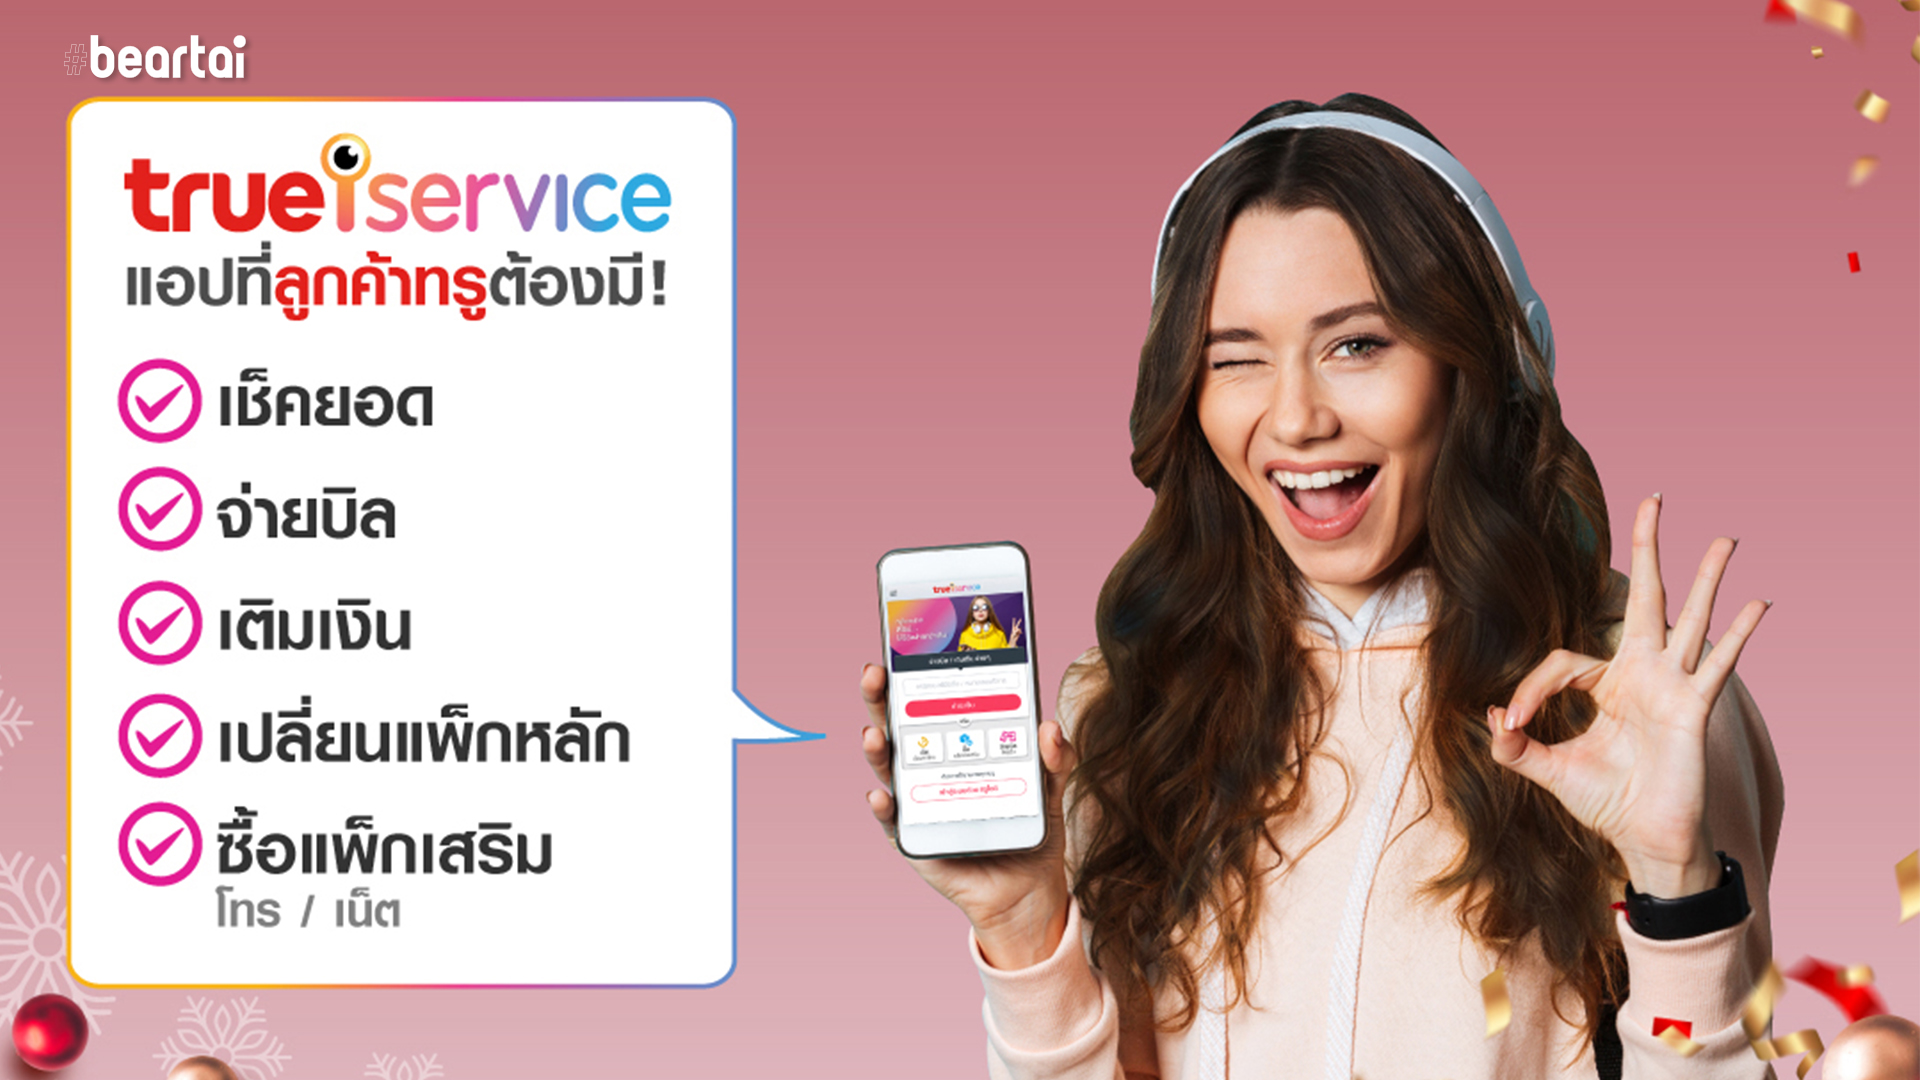 ทรู ชวนคนไทย #อยู่บ้านหยุดเชื้อเพื่อชาติ ส่งตรงทรูช็อป ถึงมือคุณผ่าน True iService